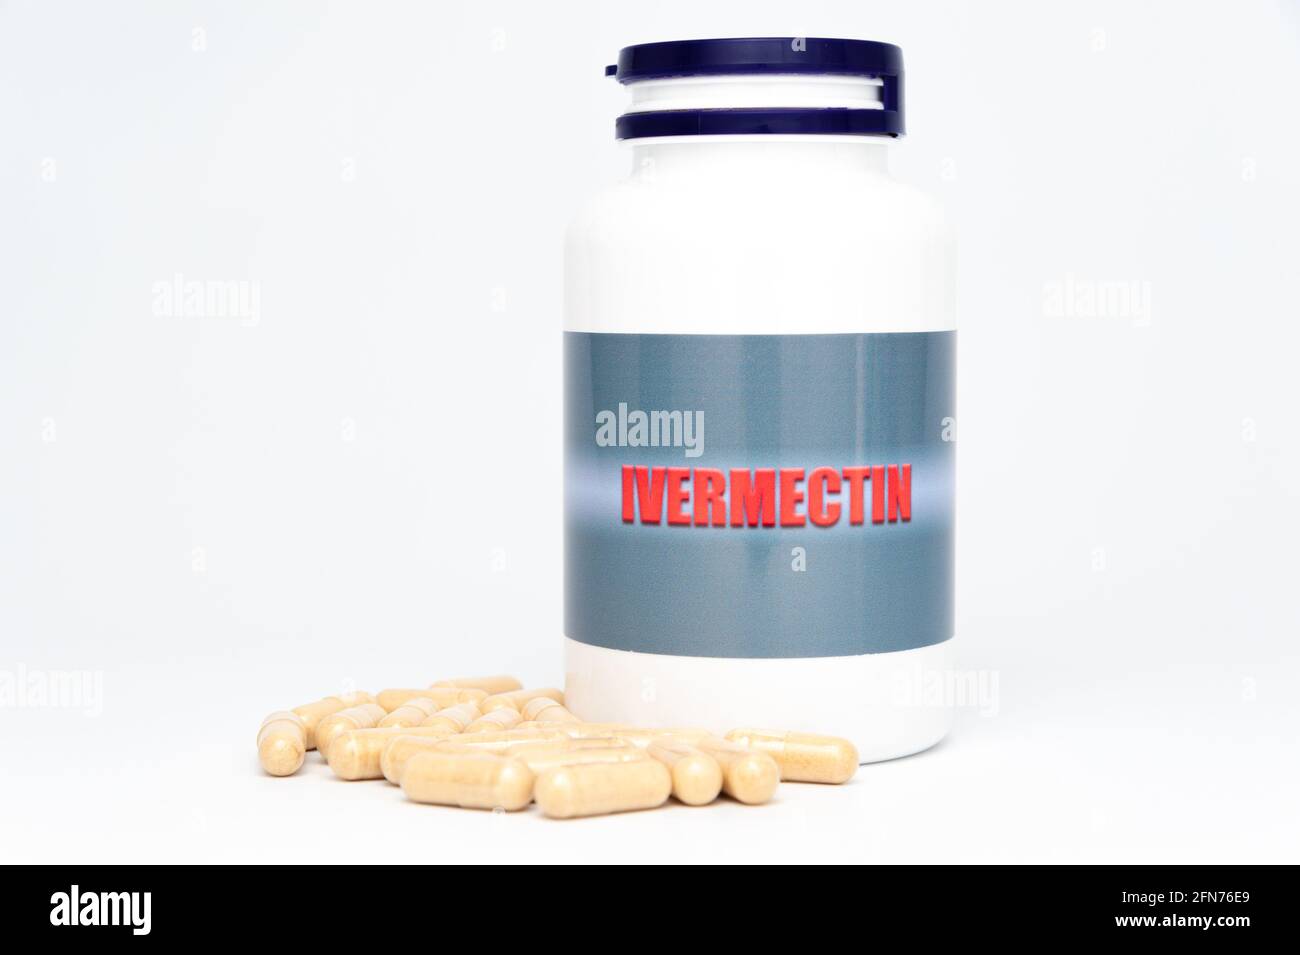 Concepto médico - botella de Ivermectin con cápsulas dispersas. Aislado sobre fondo blanco. Foto de stock